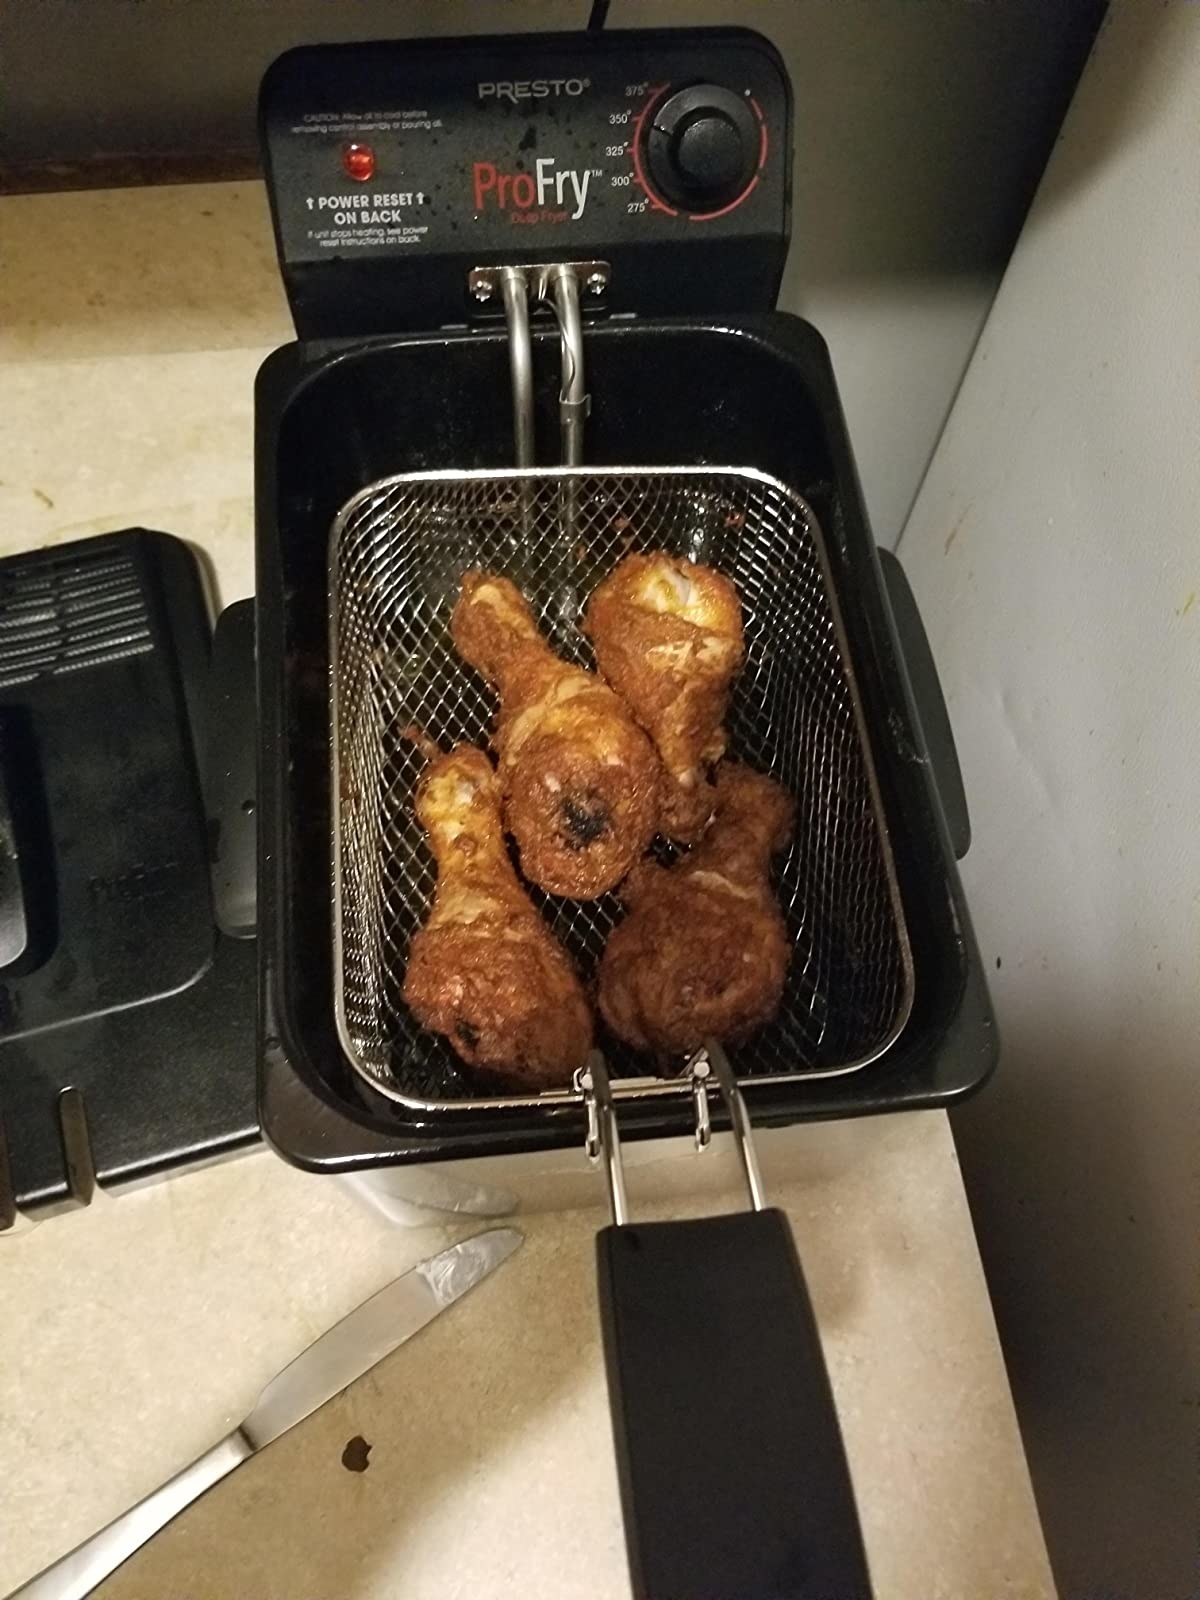 Chicken fried in the fryer